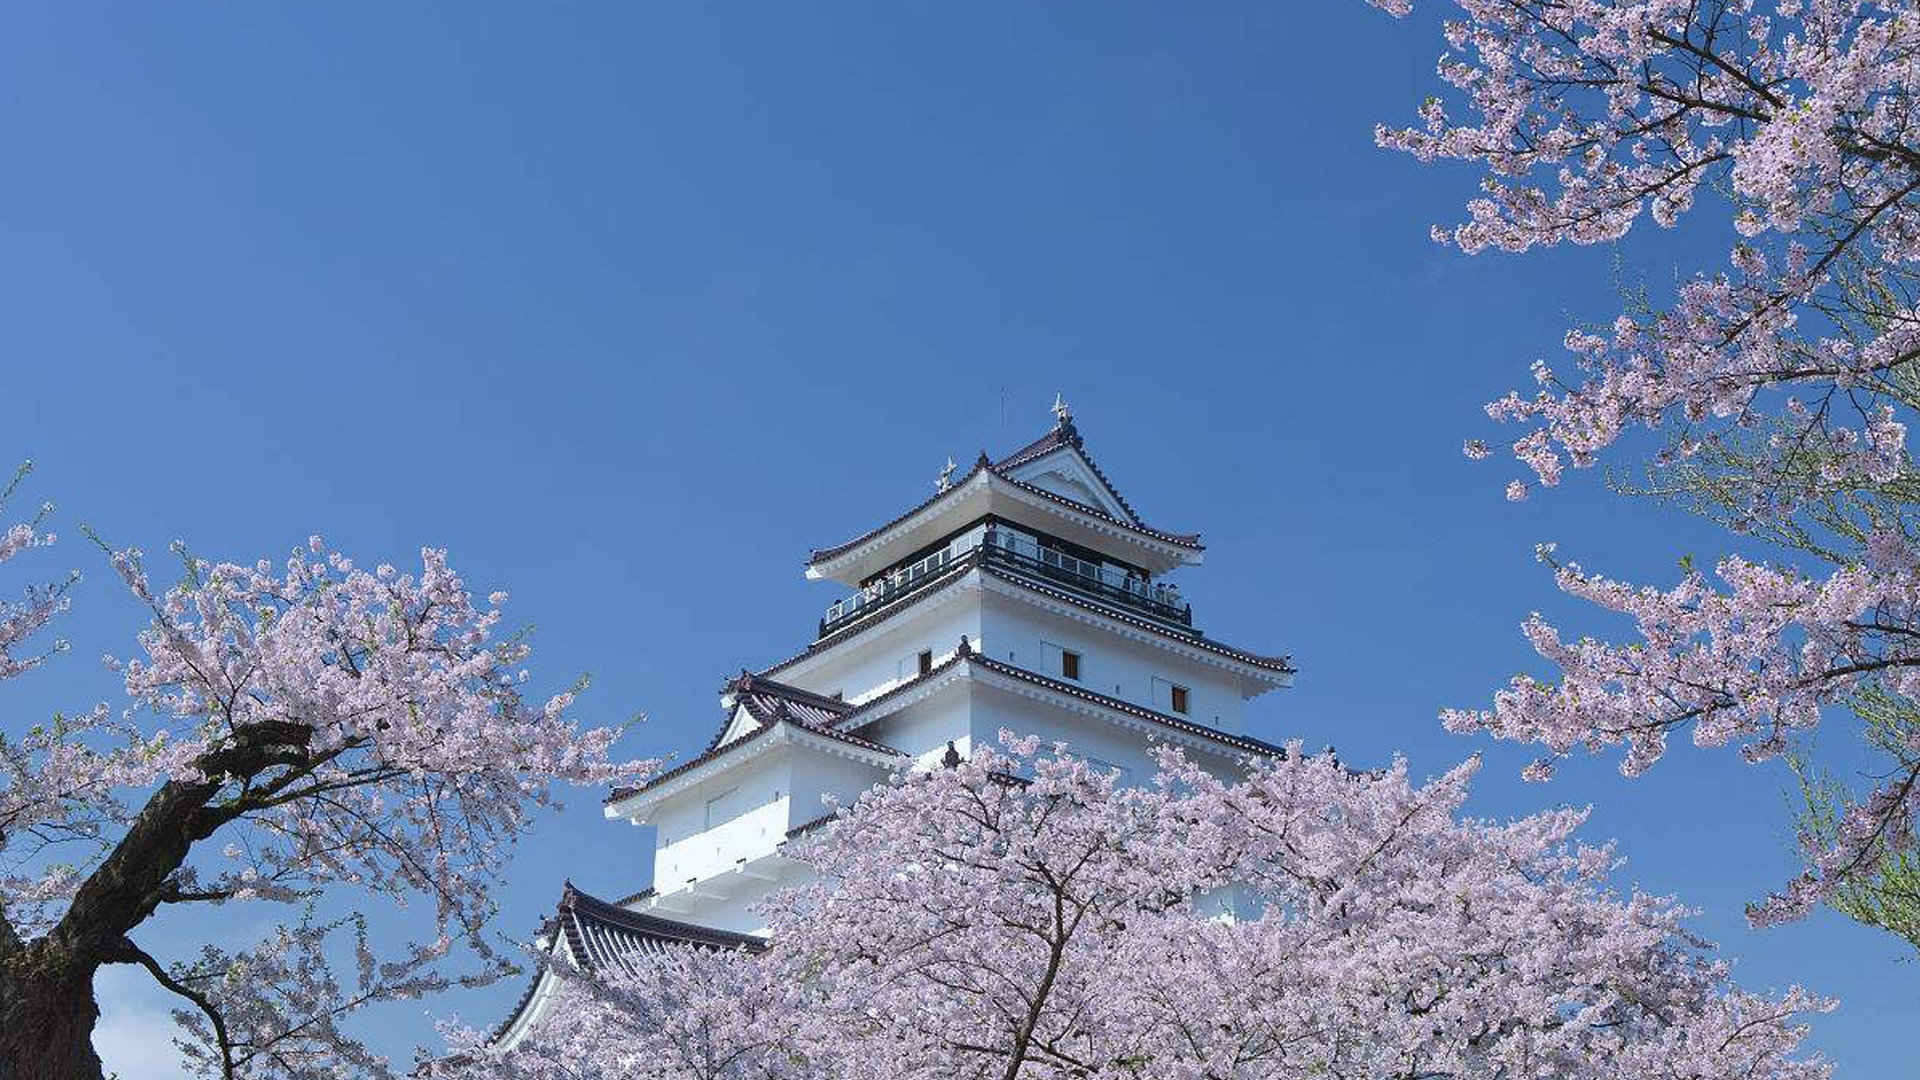 日本会津若松建筑图片大全高清 风景壁纸-